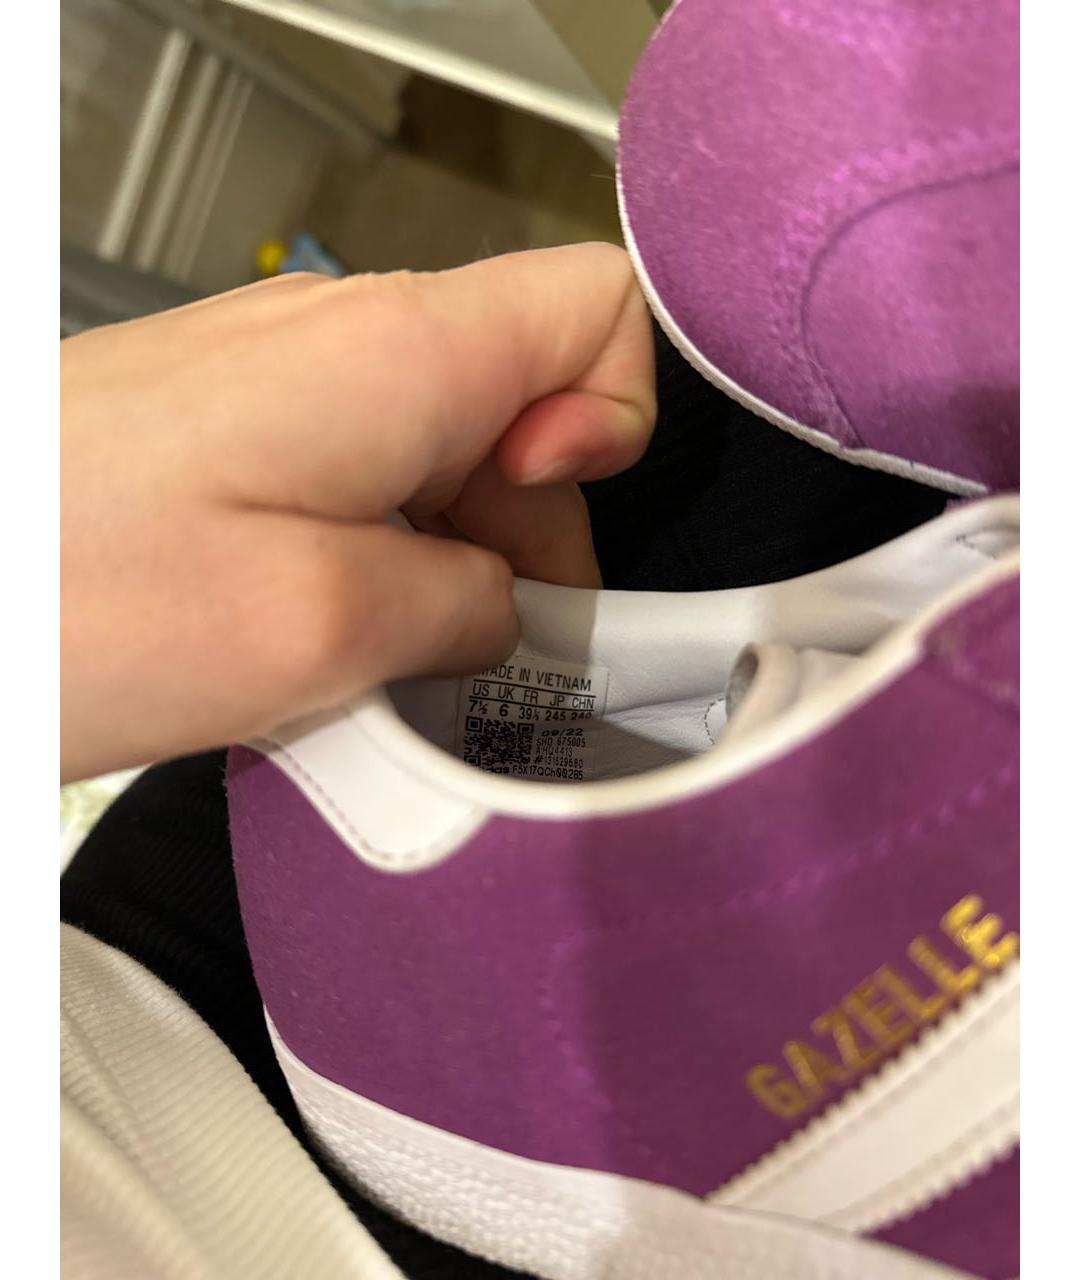 ADIDAS Фиолетовые замшевые кроссовки, фото 5